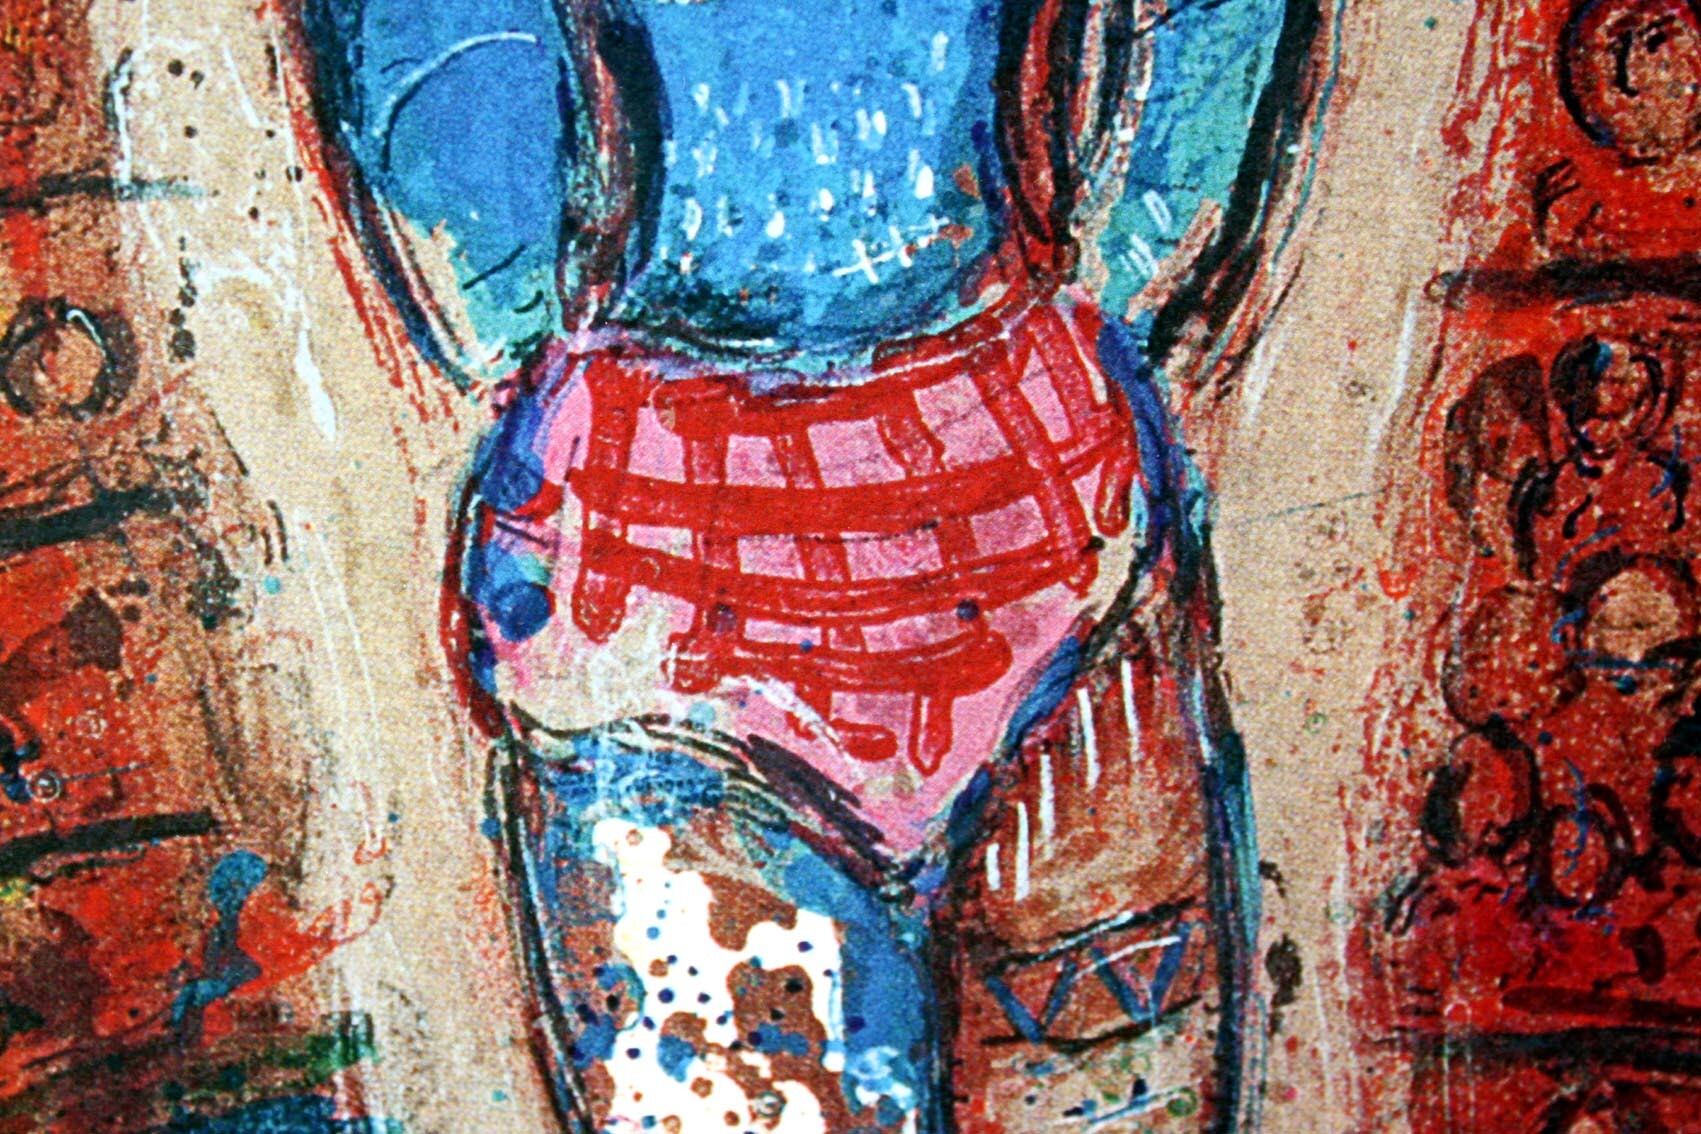 マルク・シャガール絵画「サーカス」作品証明書・展示用フック・限定375部エディション付複製画ジークレ